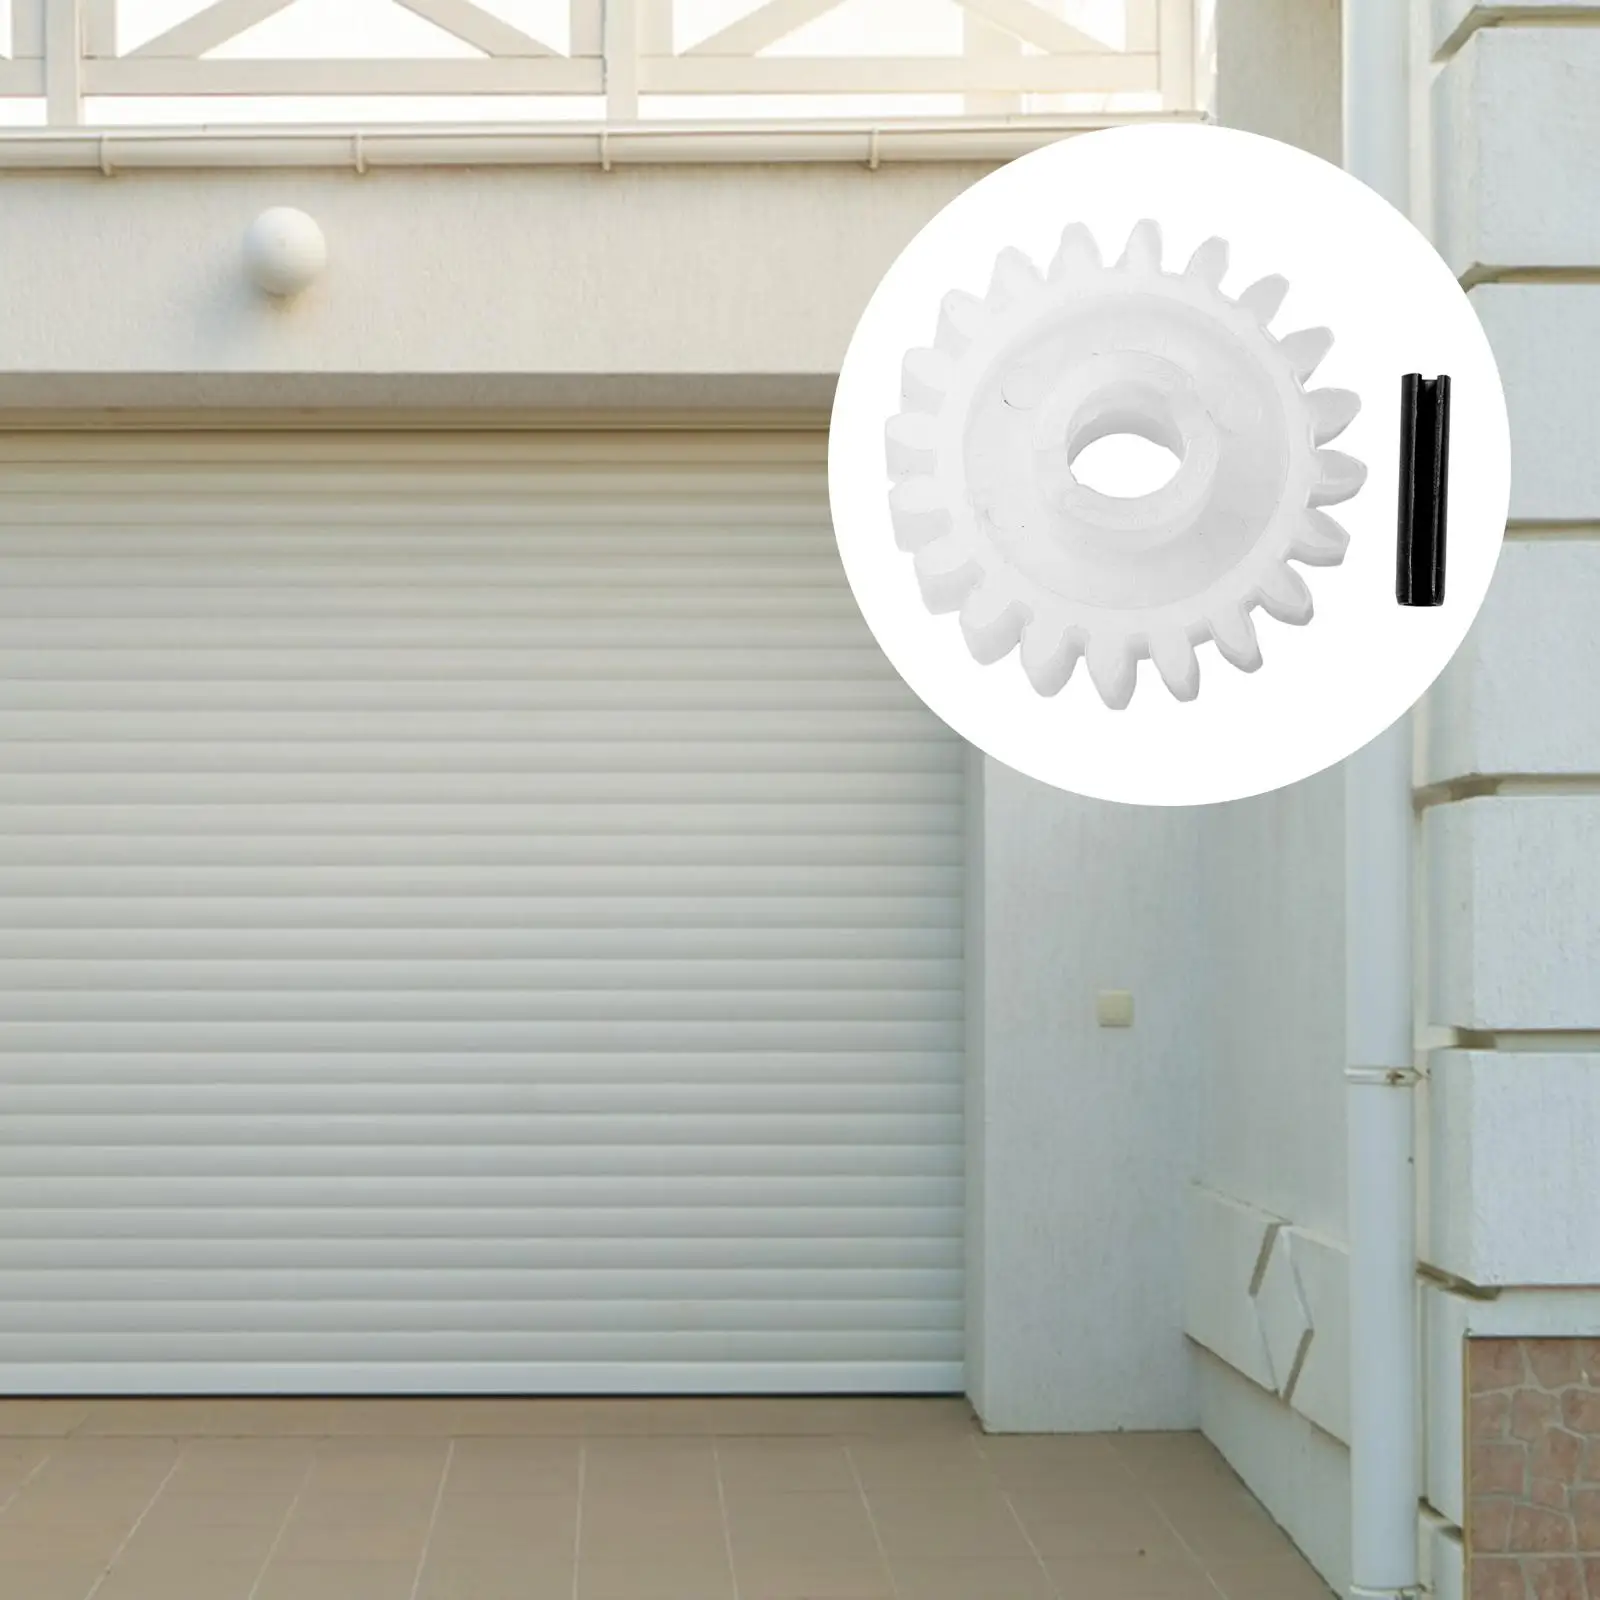 Garage Door Replacement Parts Durable Lightweight Perfect Fit 2.17`` Door Motor Drive Gear for XX133 XX333 XX350 DIY Accs